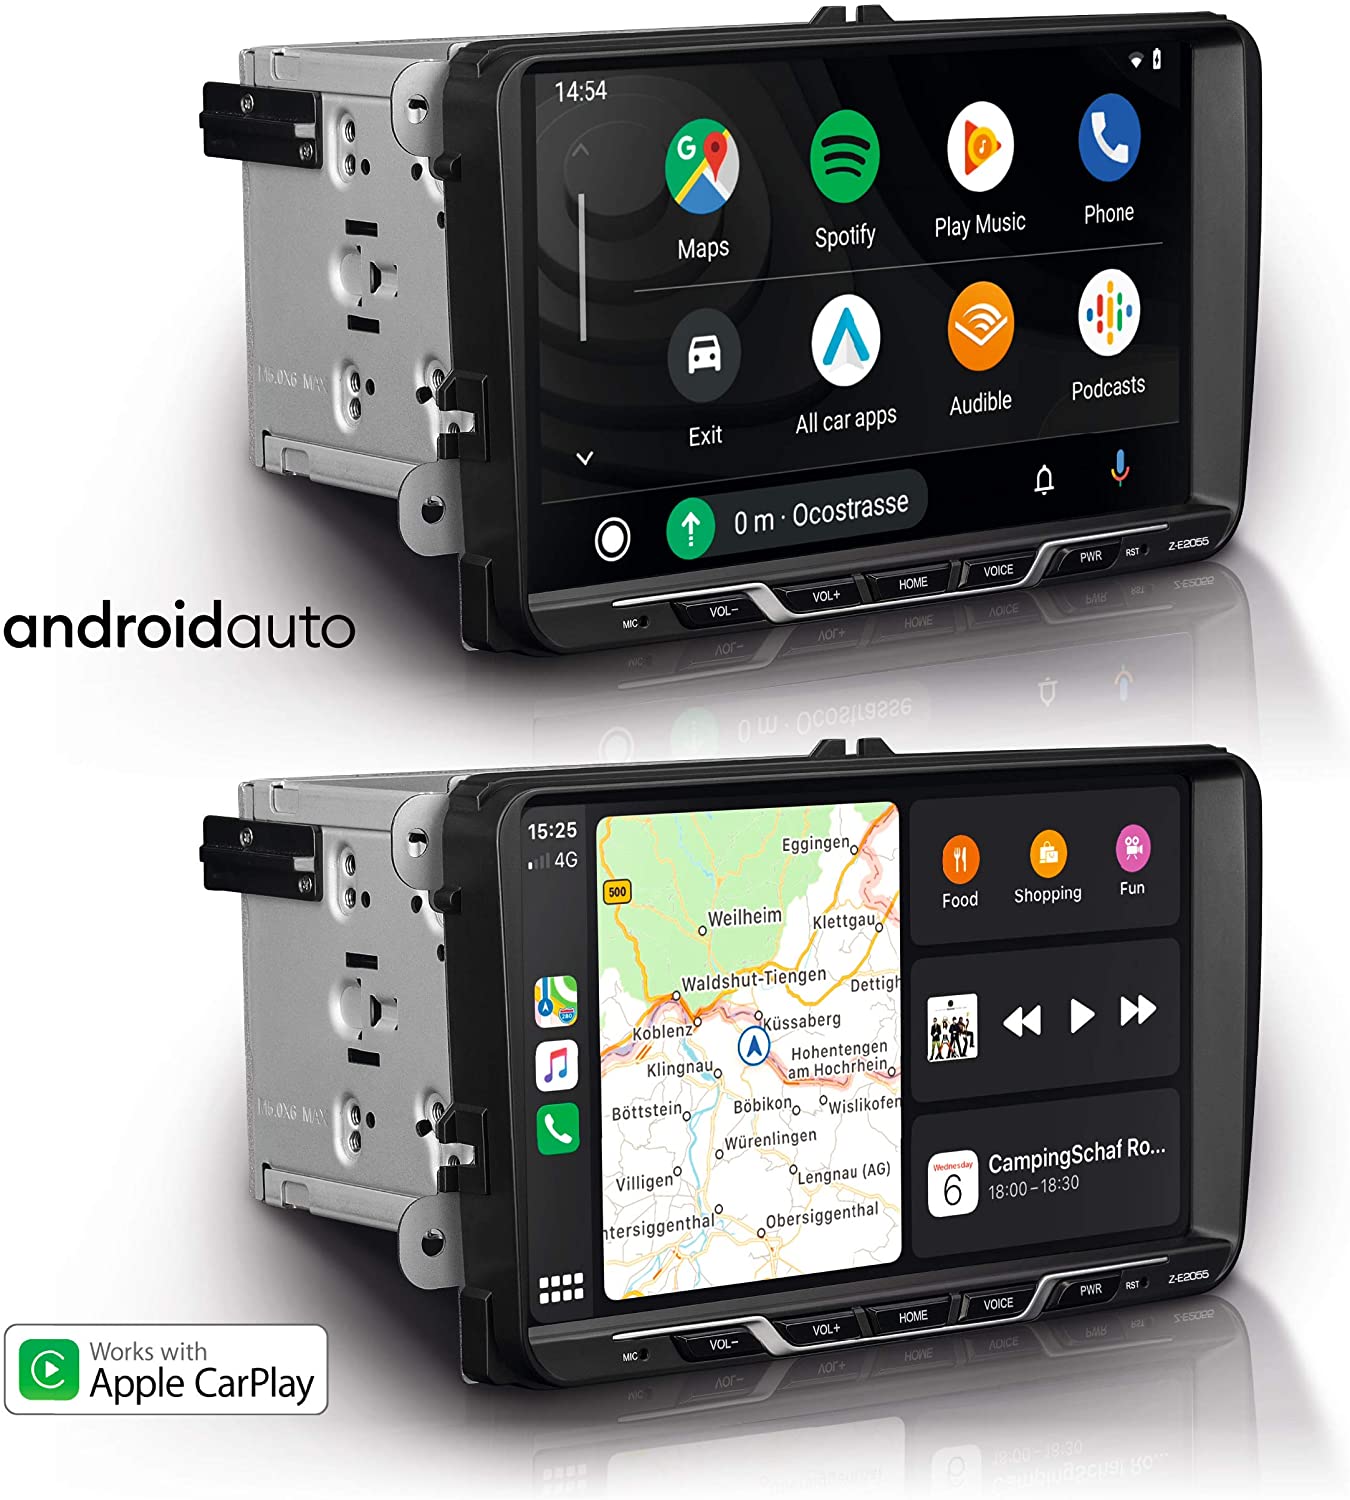 ZENEC Z-E2055 E>GO Infotainer Autoradio mit 9" Panel TFT für Volkswagen, VW, SEAT UND SKODA mit Apple CarPlay und Google Android, DAB+ Tuner, Bluetooth 